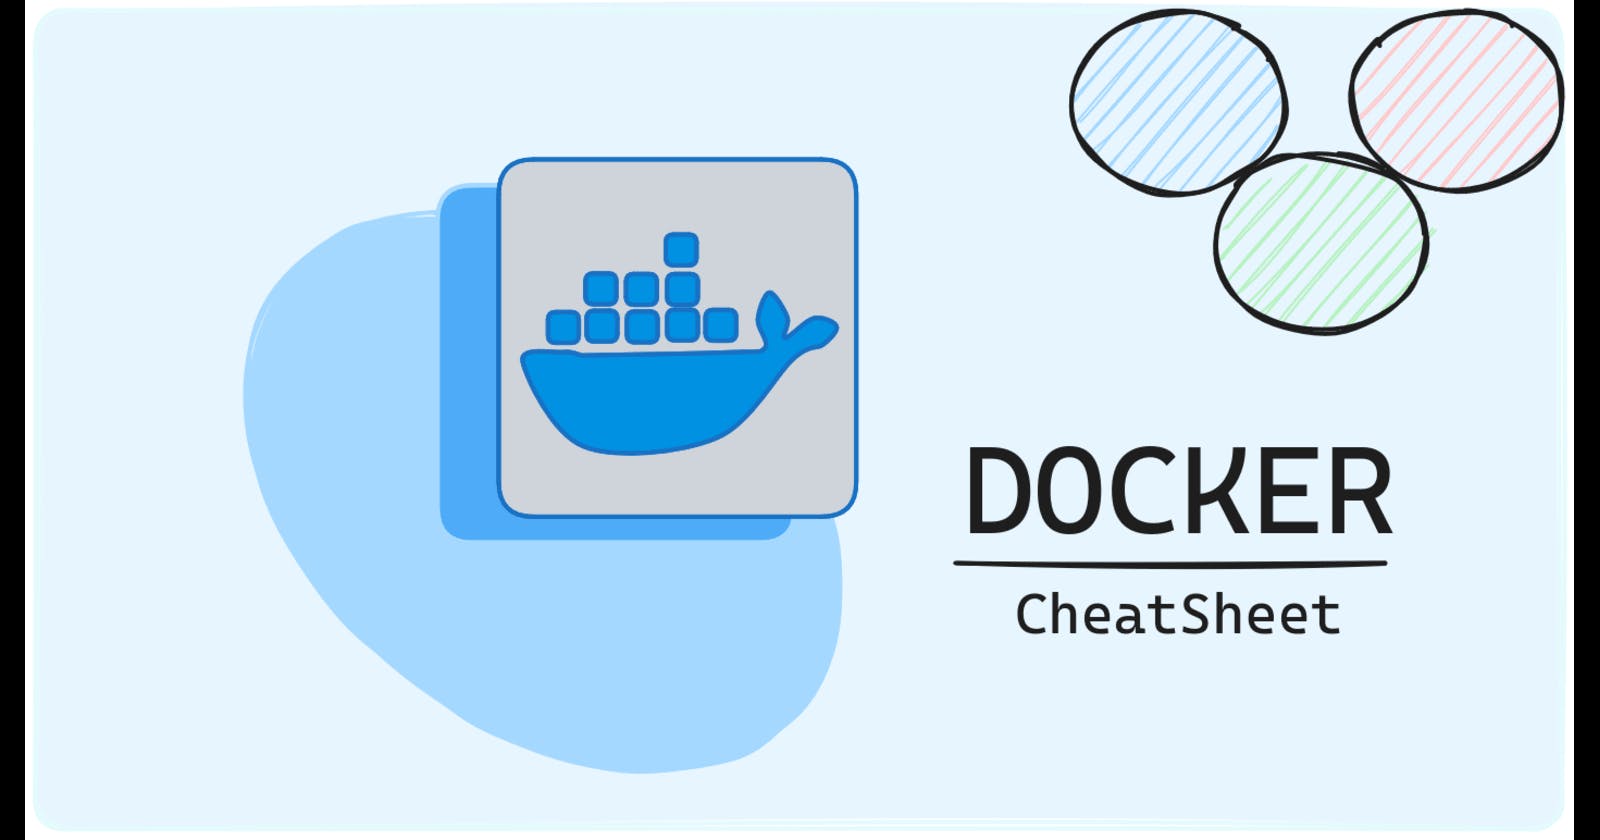 Day 20 - Docker CheatSheet